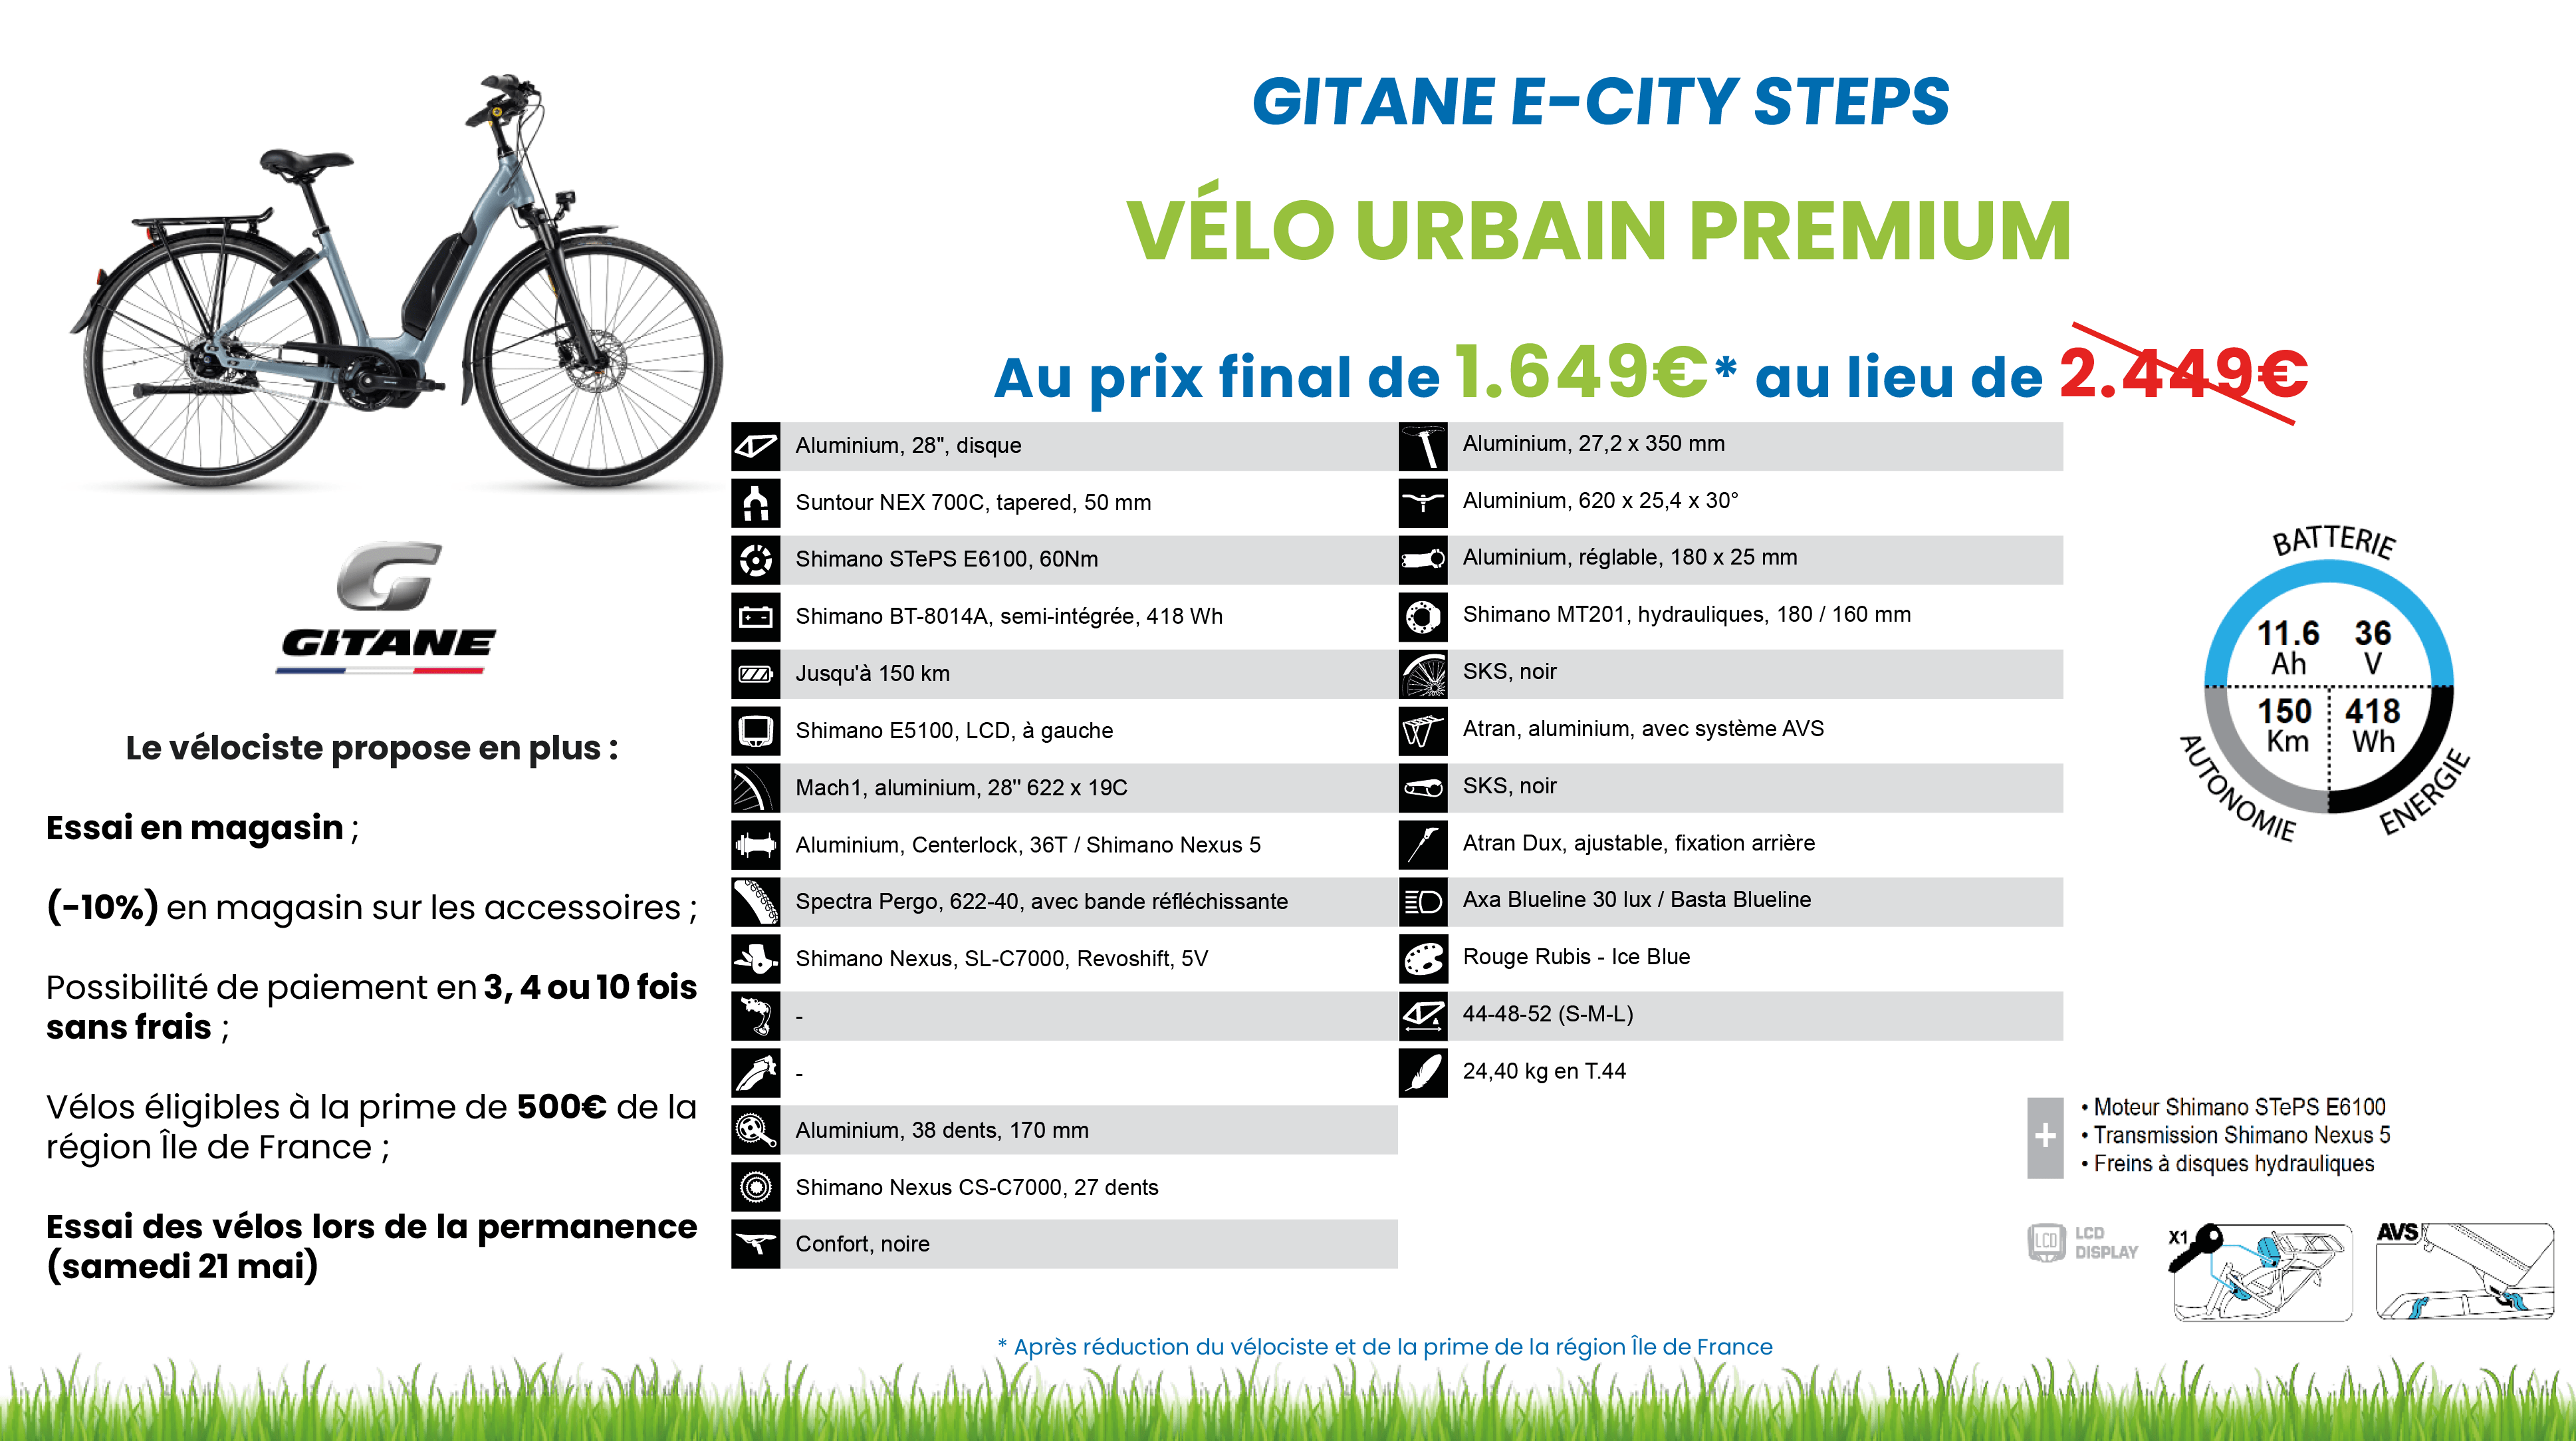 Gitane e-city steps-min